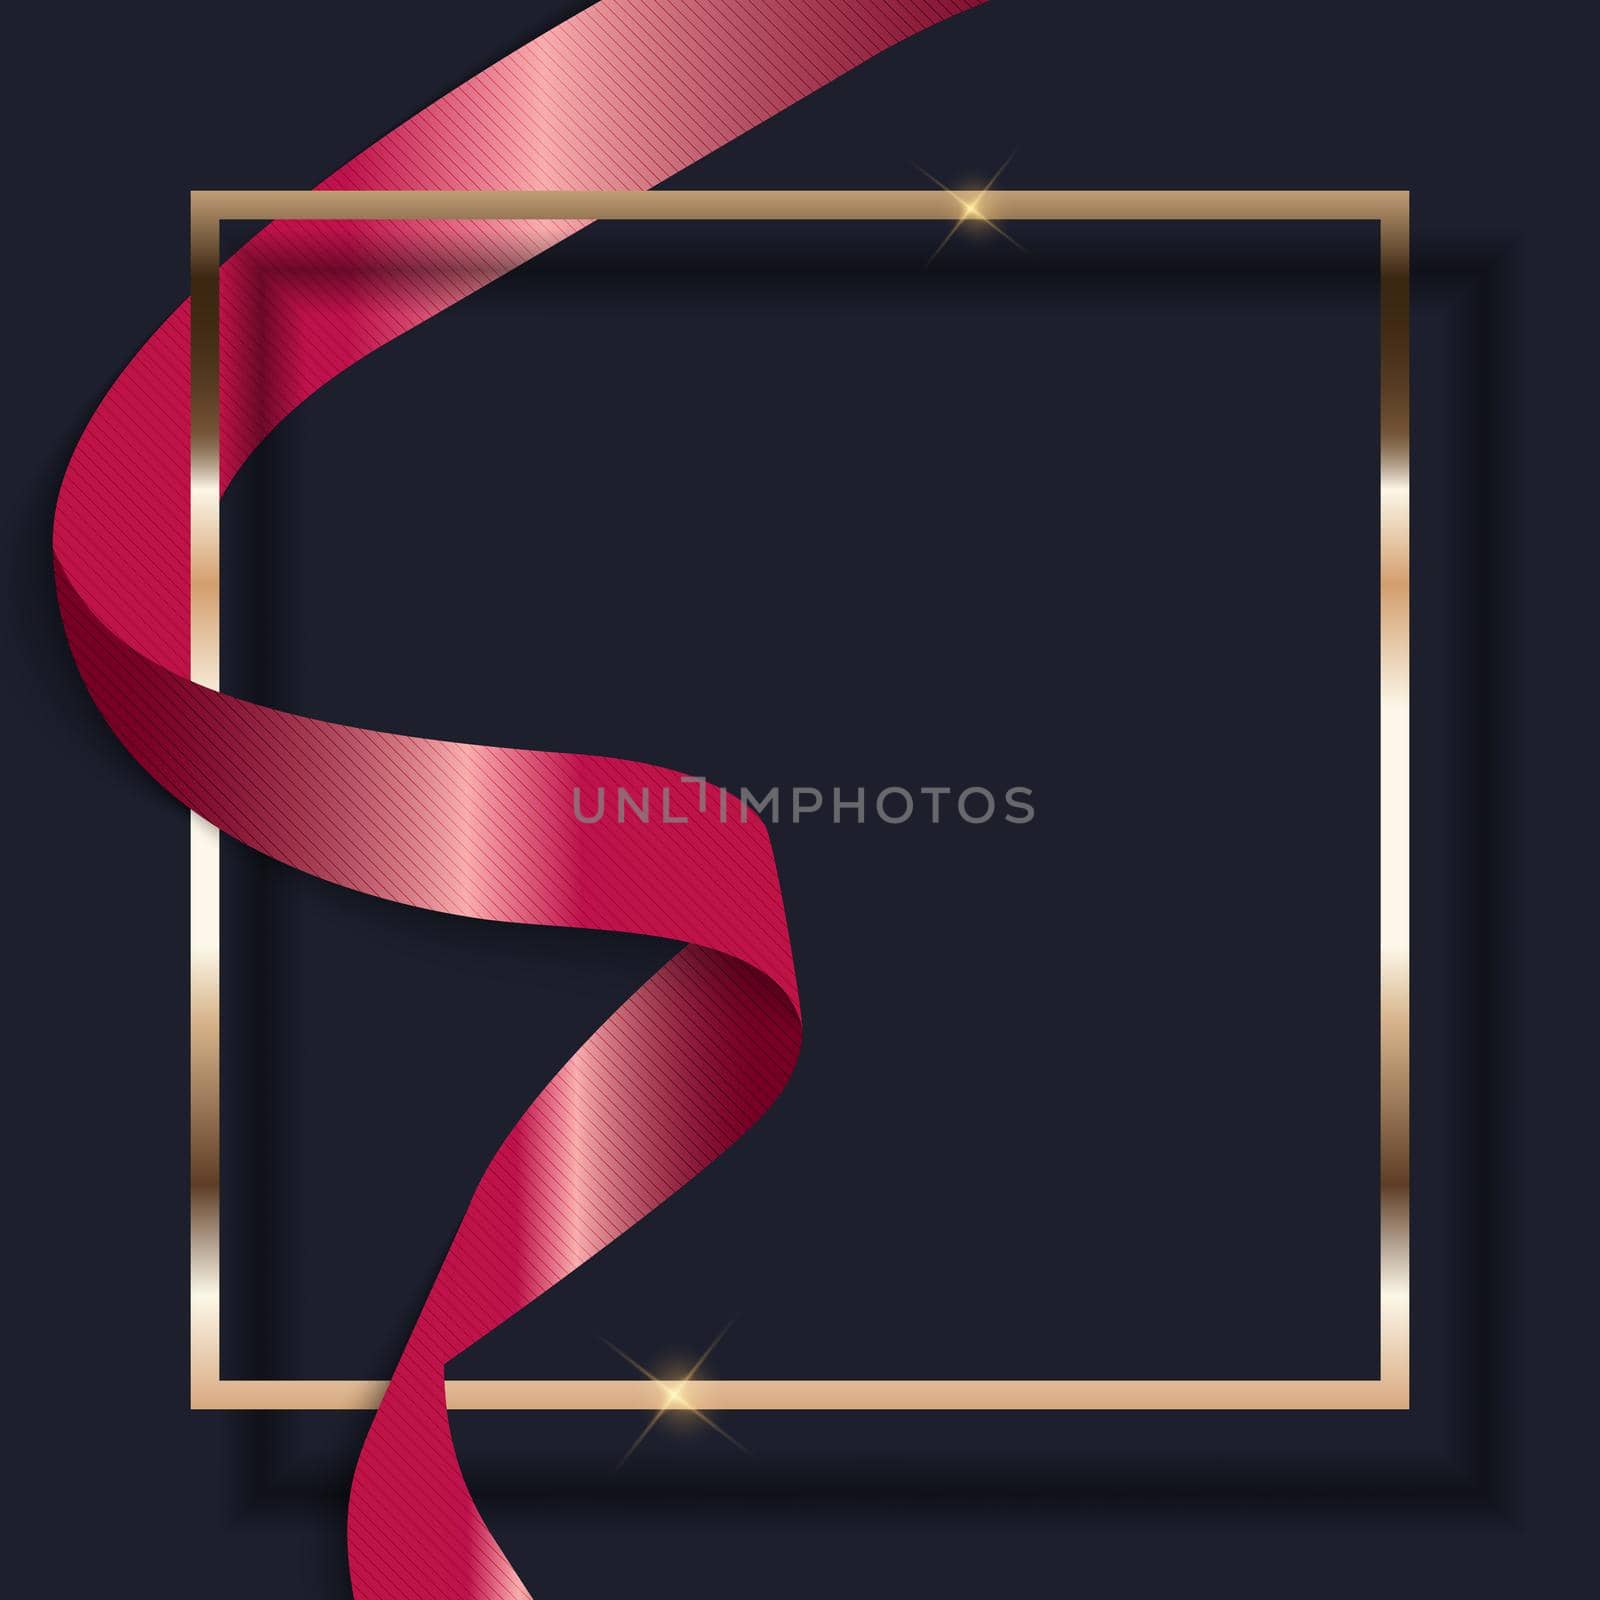 Pink Ribbon and Golden Frame on Dark Background. Vector Illustration EPS10